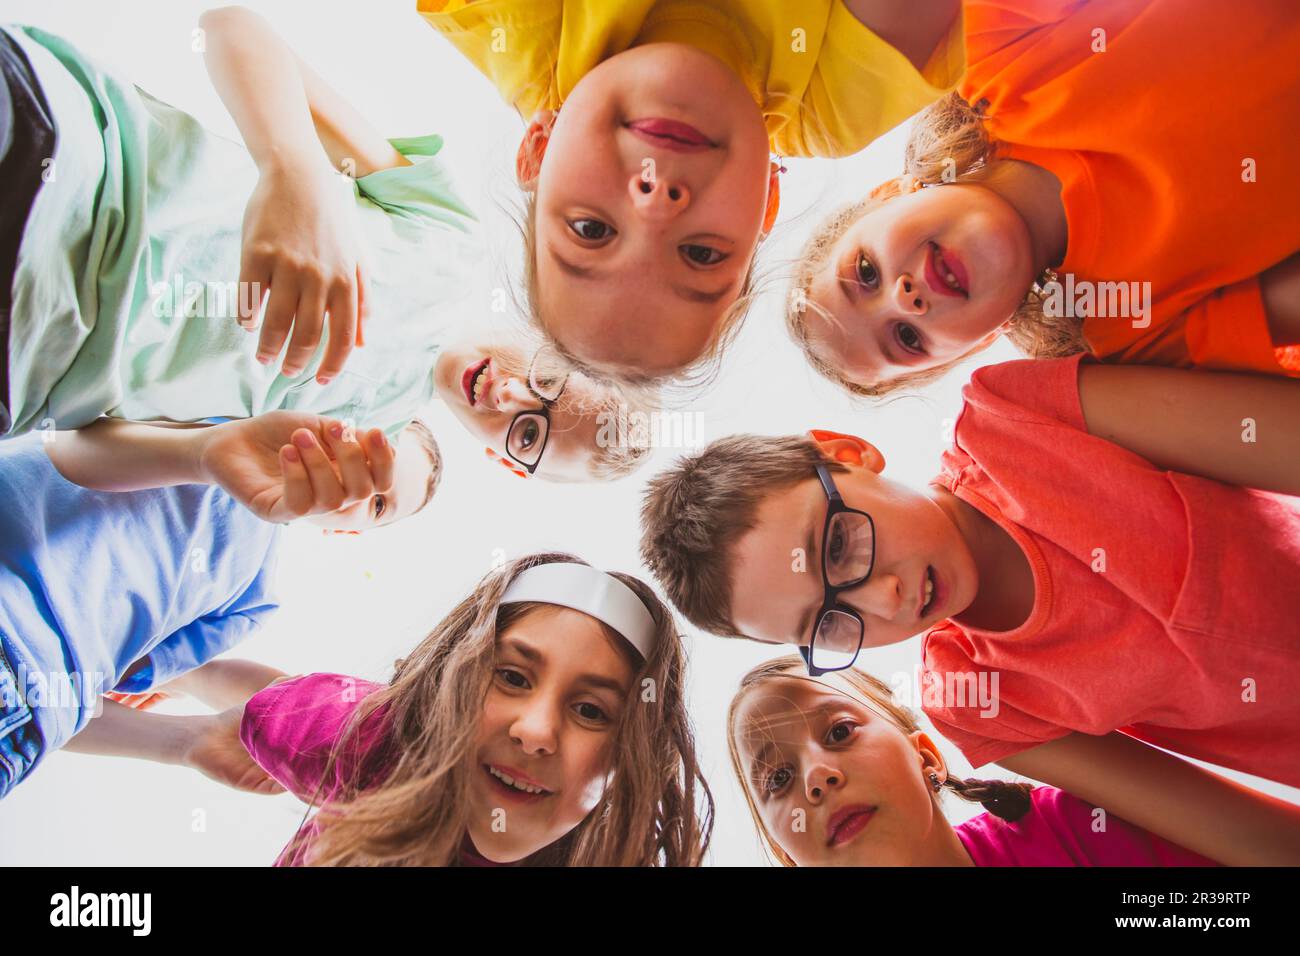 Squadra di bambini sorridenti che si abbracciano insieme in un cerchio, vista dal basso. Foto Stock